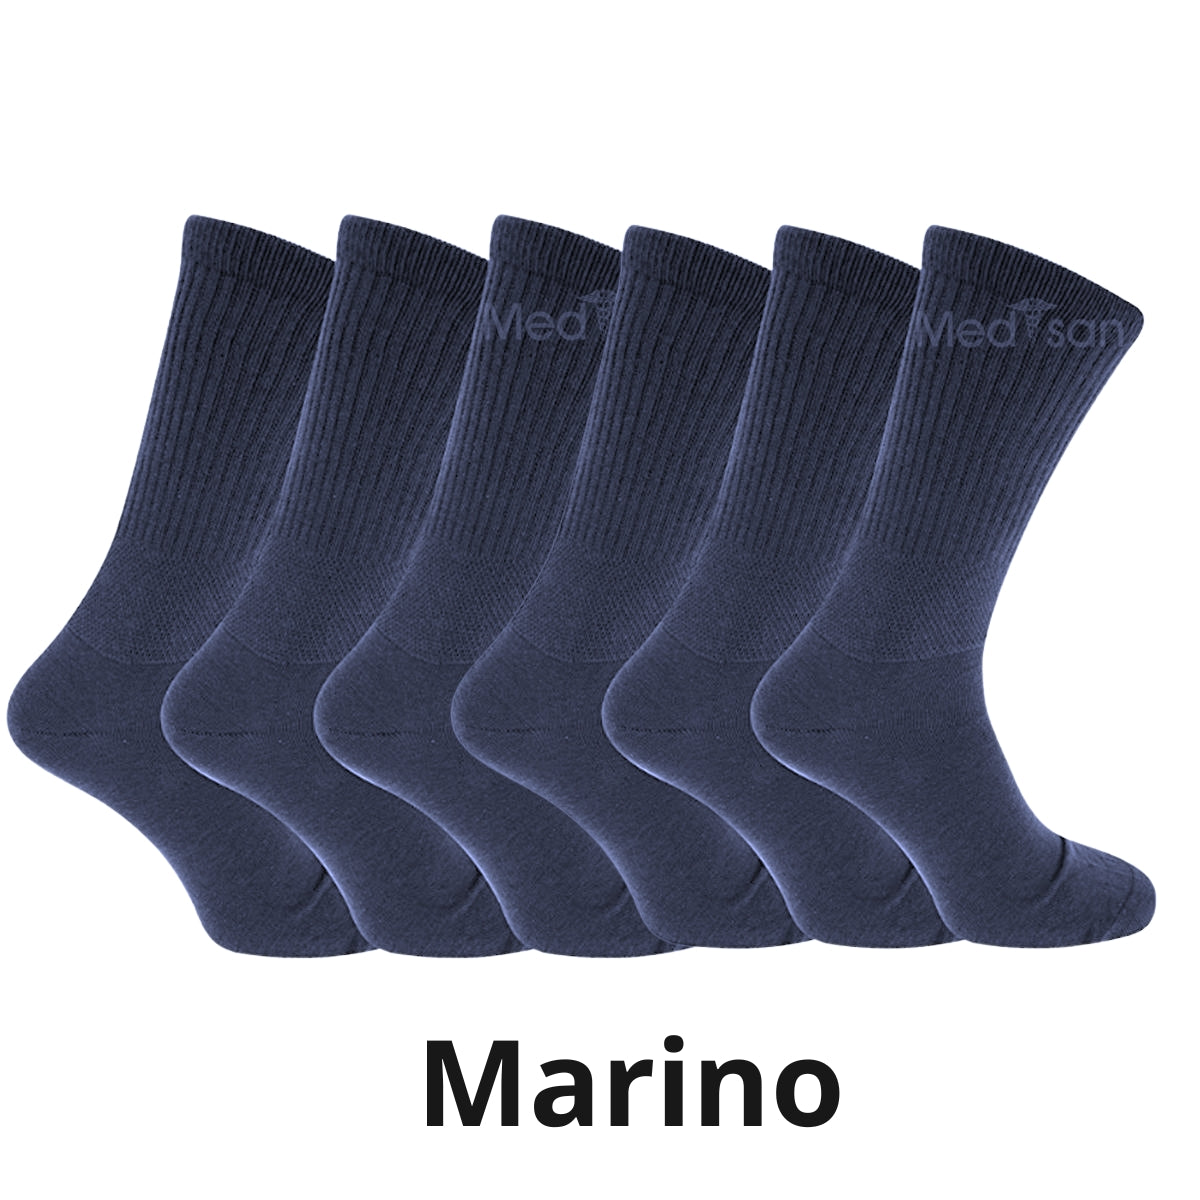 calcetines de algodon para diabetico (12 pares)